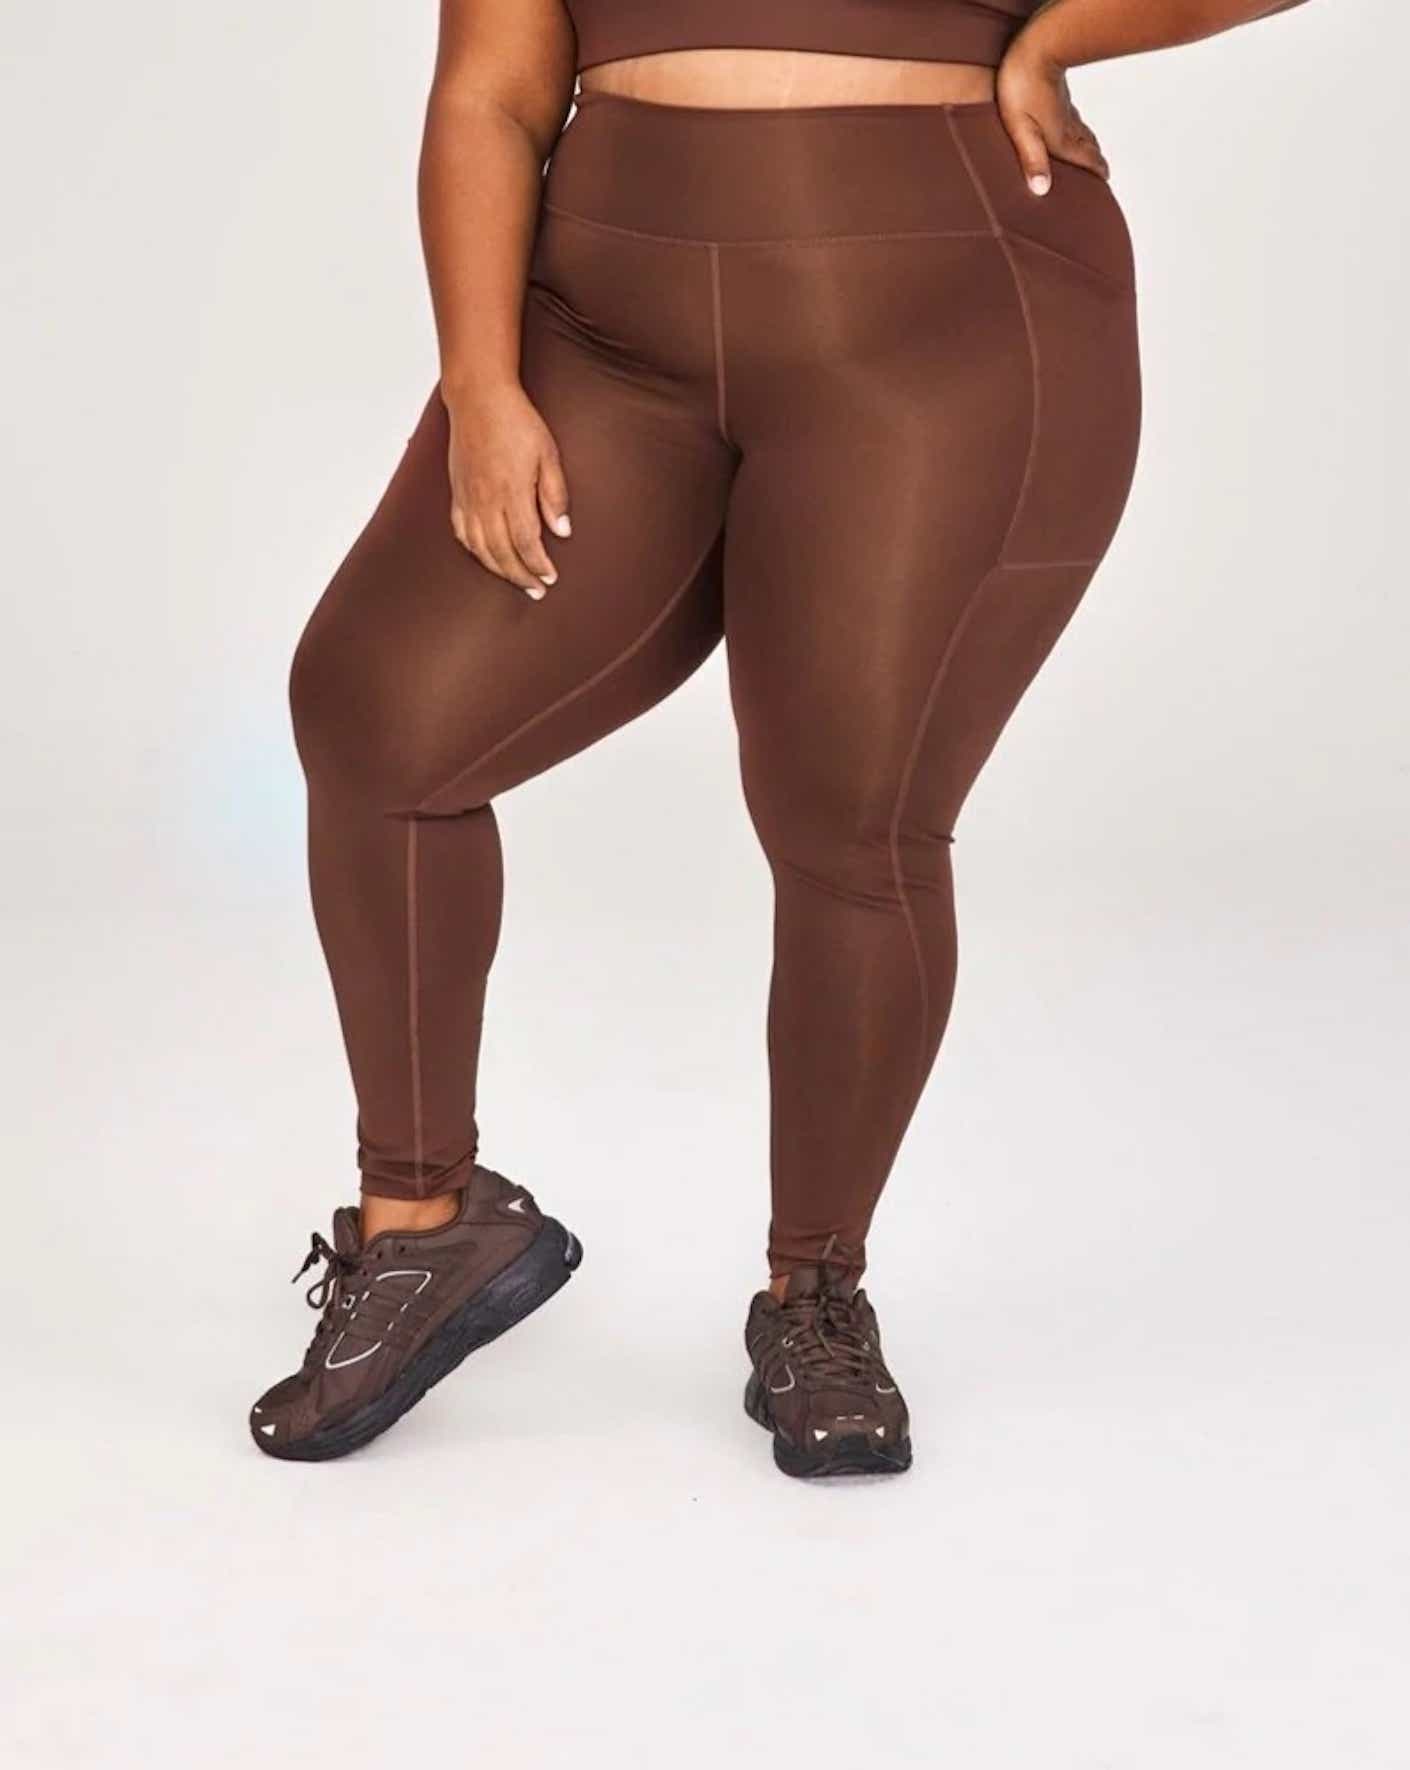 woman wearing brown leggings